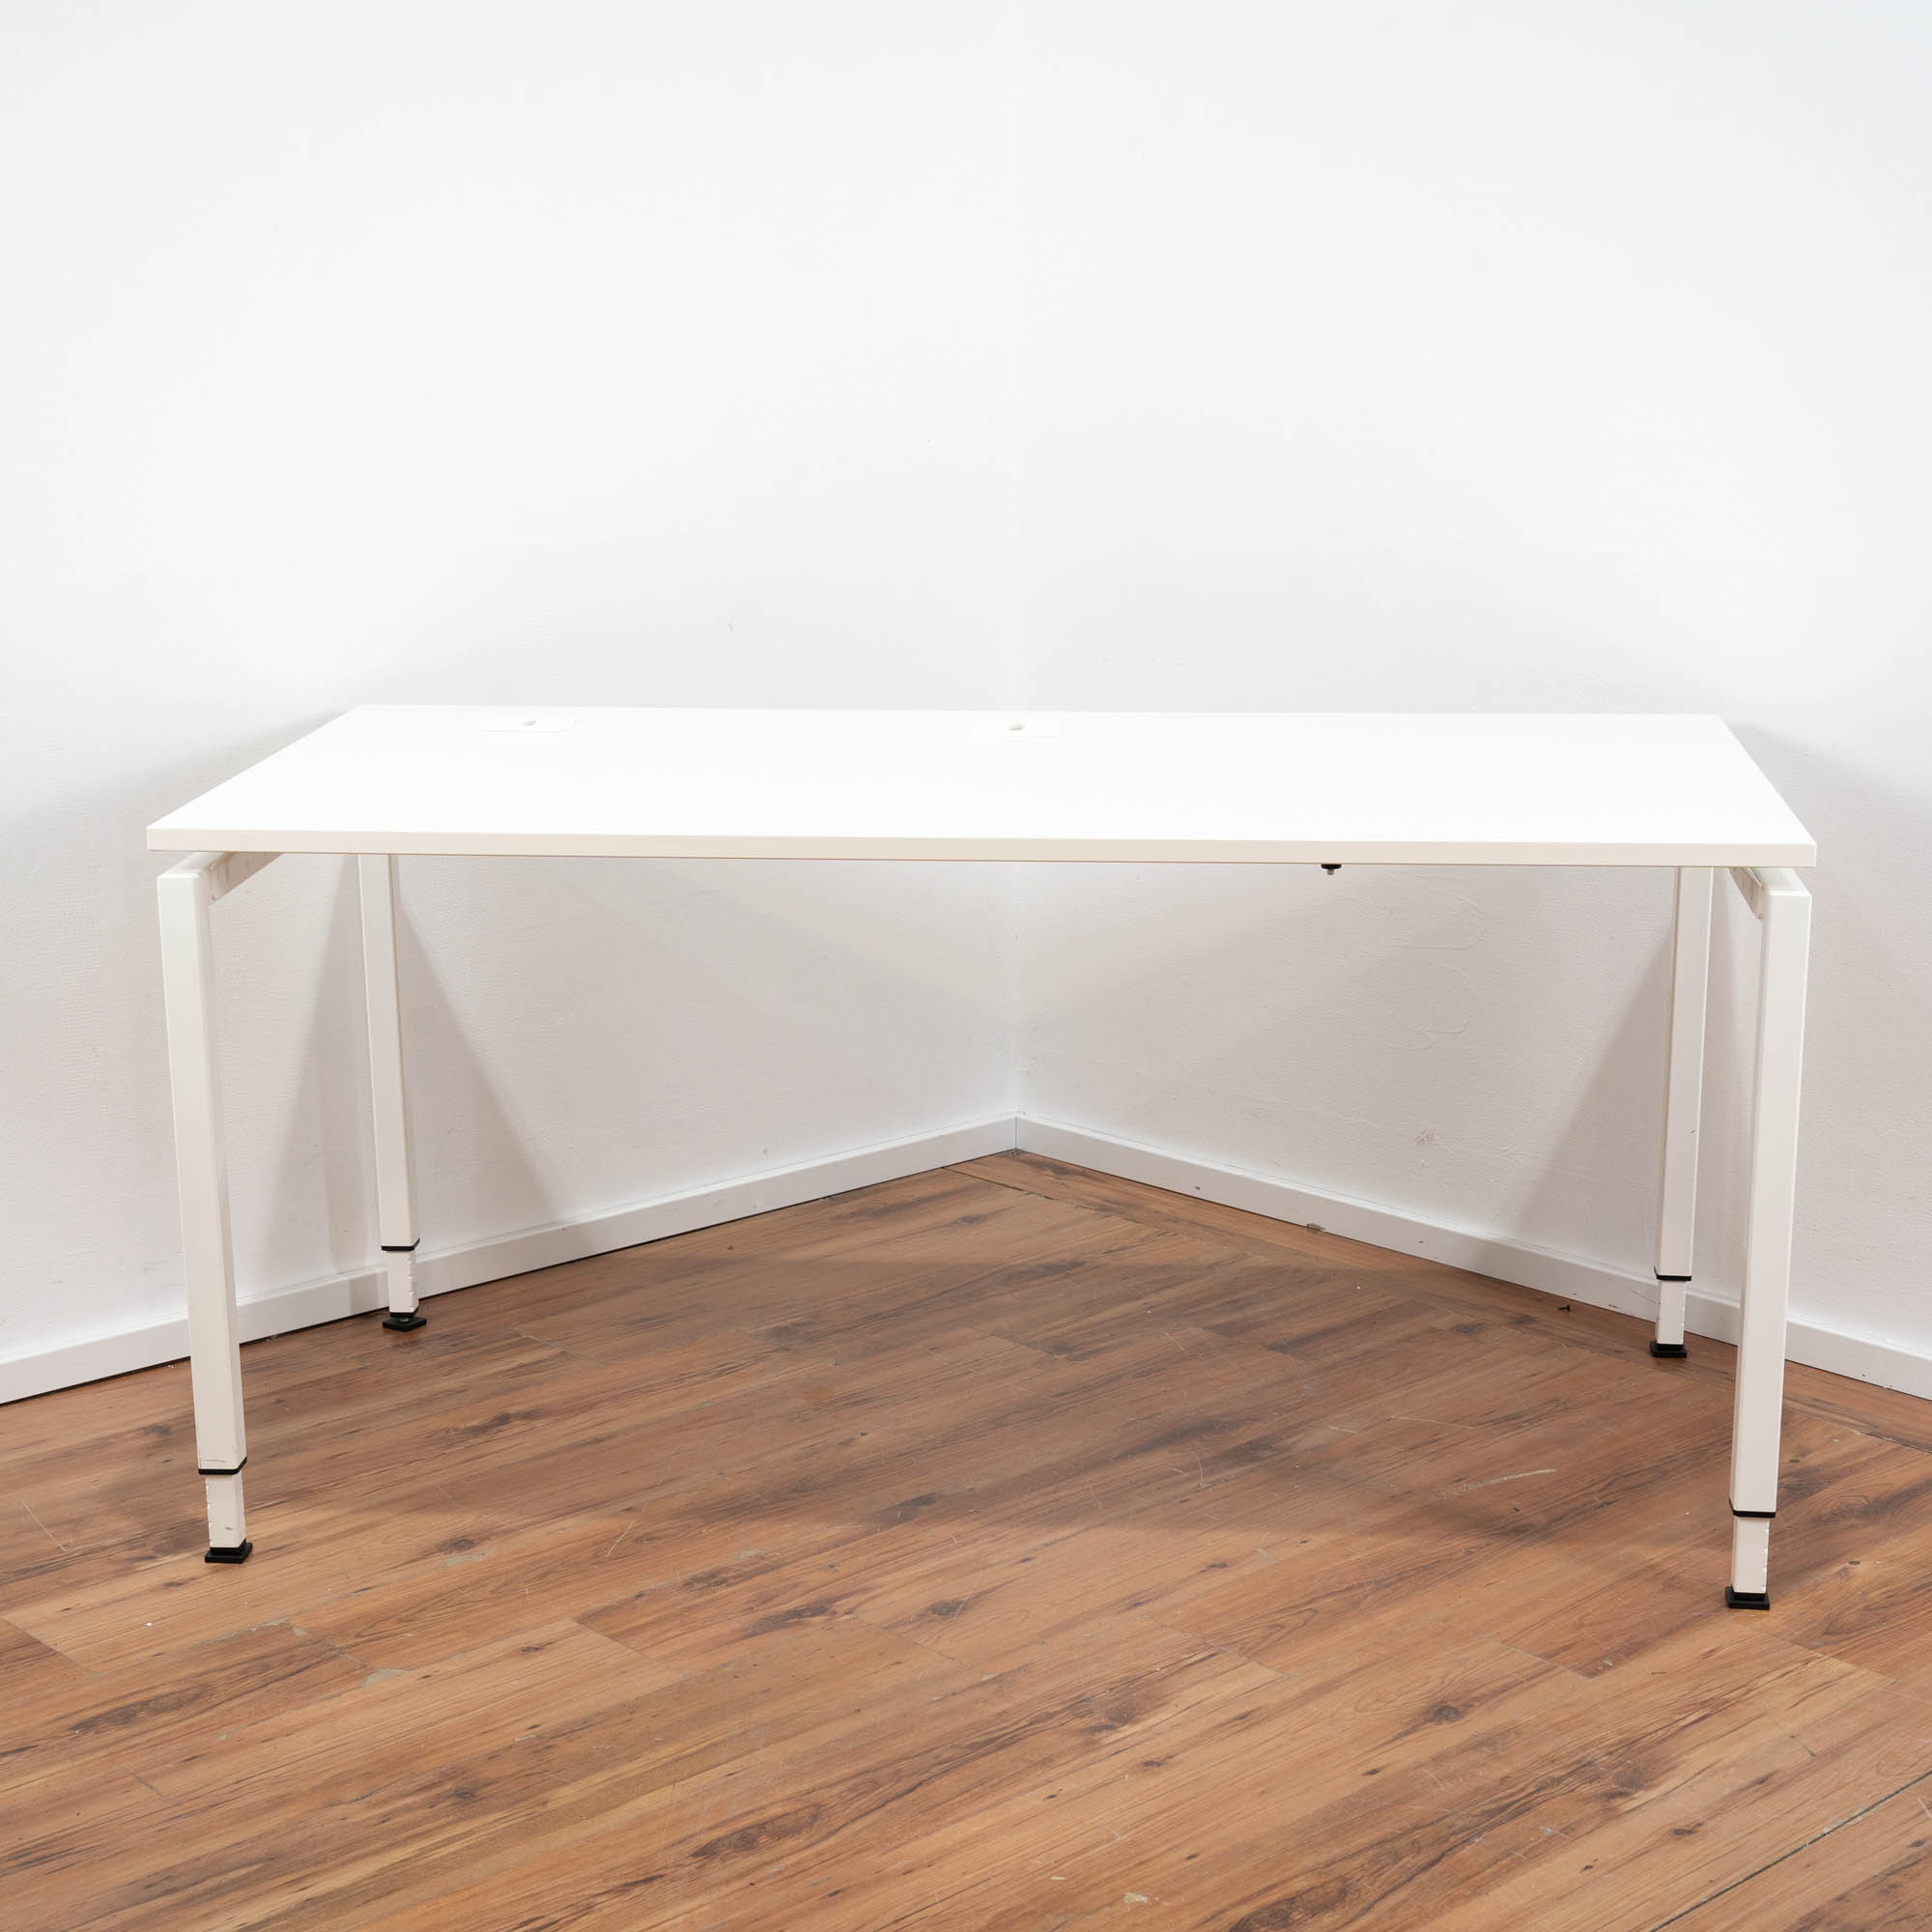 Febrü Schreibtisch weiß - 160 x 80 cm - höhenverstellbar